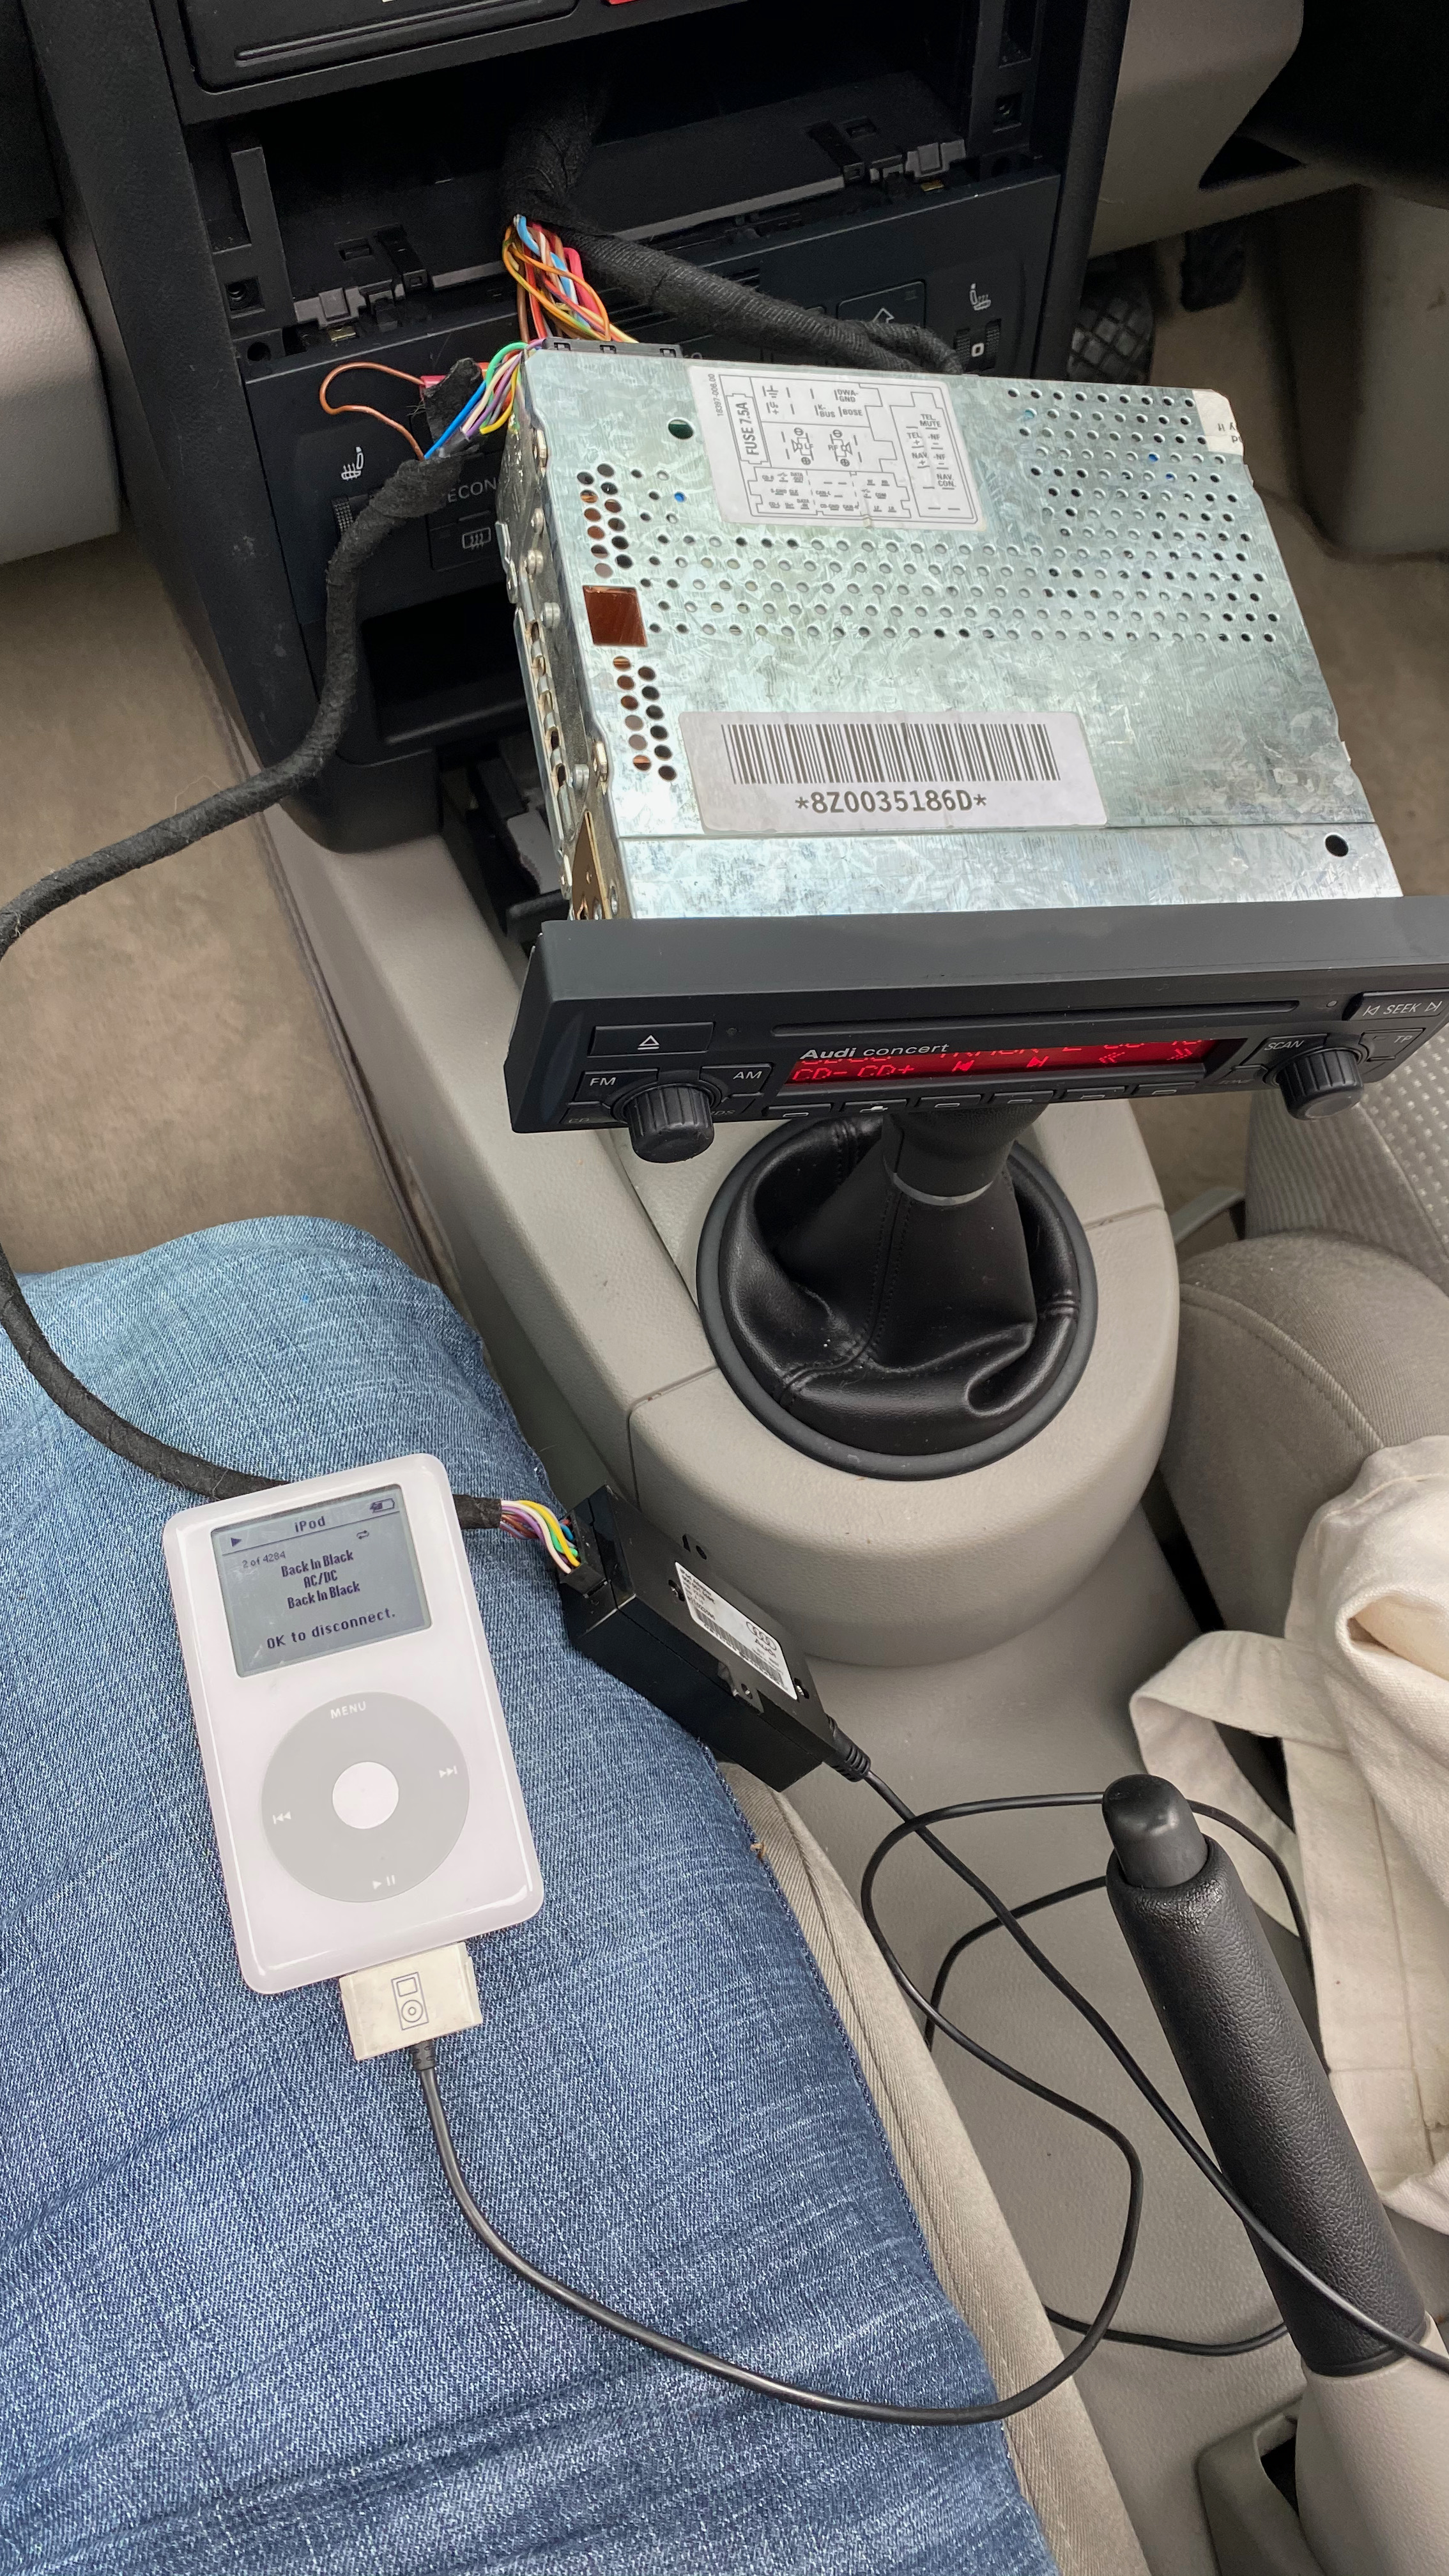 Fitting Audi iPod adapter